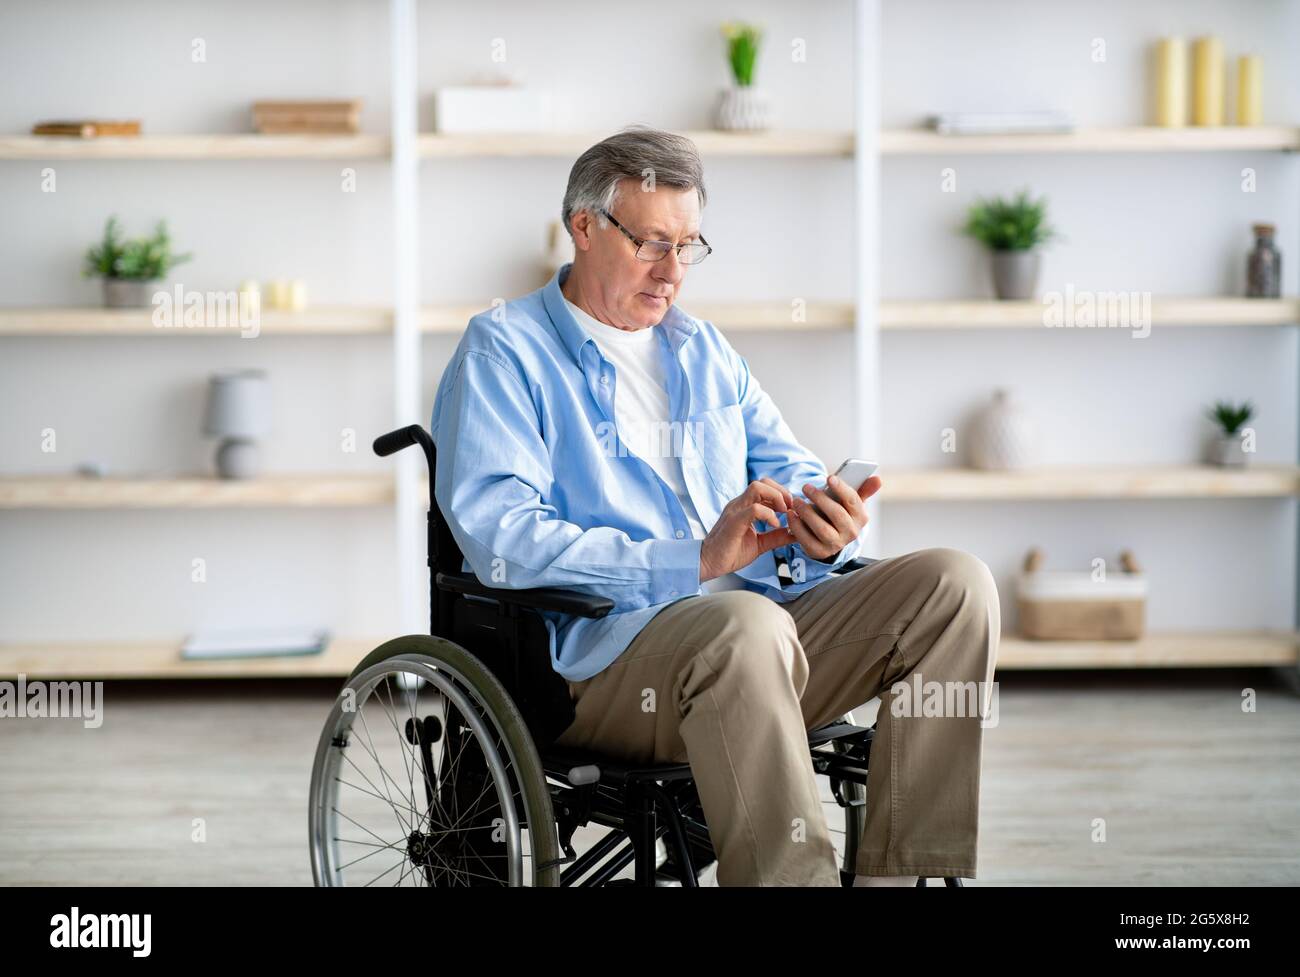 Älterer behinderter Mann im Rollstuhl, der Smartphone benutzt, Nachrichten überprüft, Videos ansieht, zu Hause im Internet surft Stockfoto